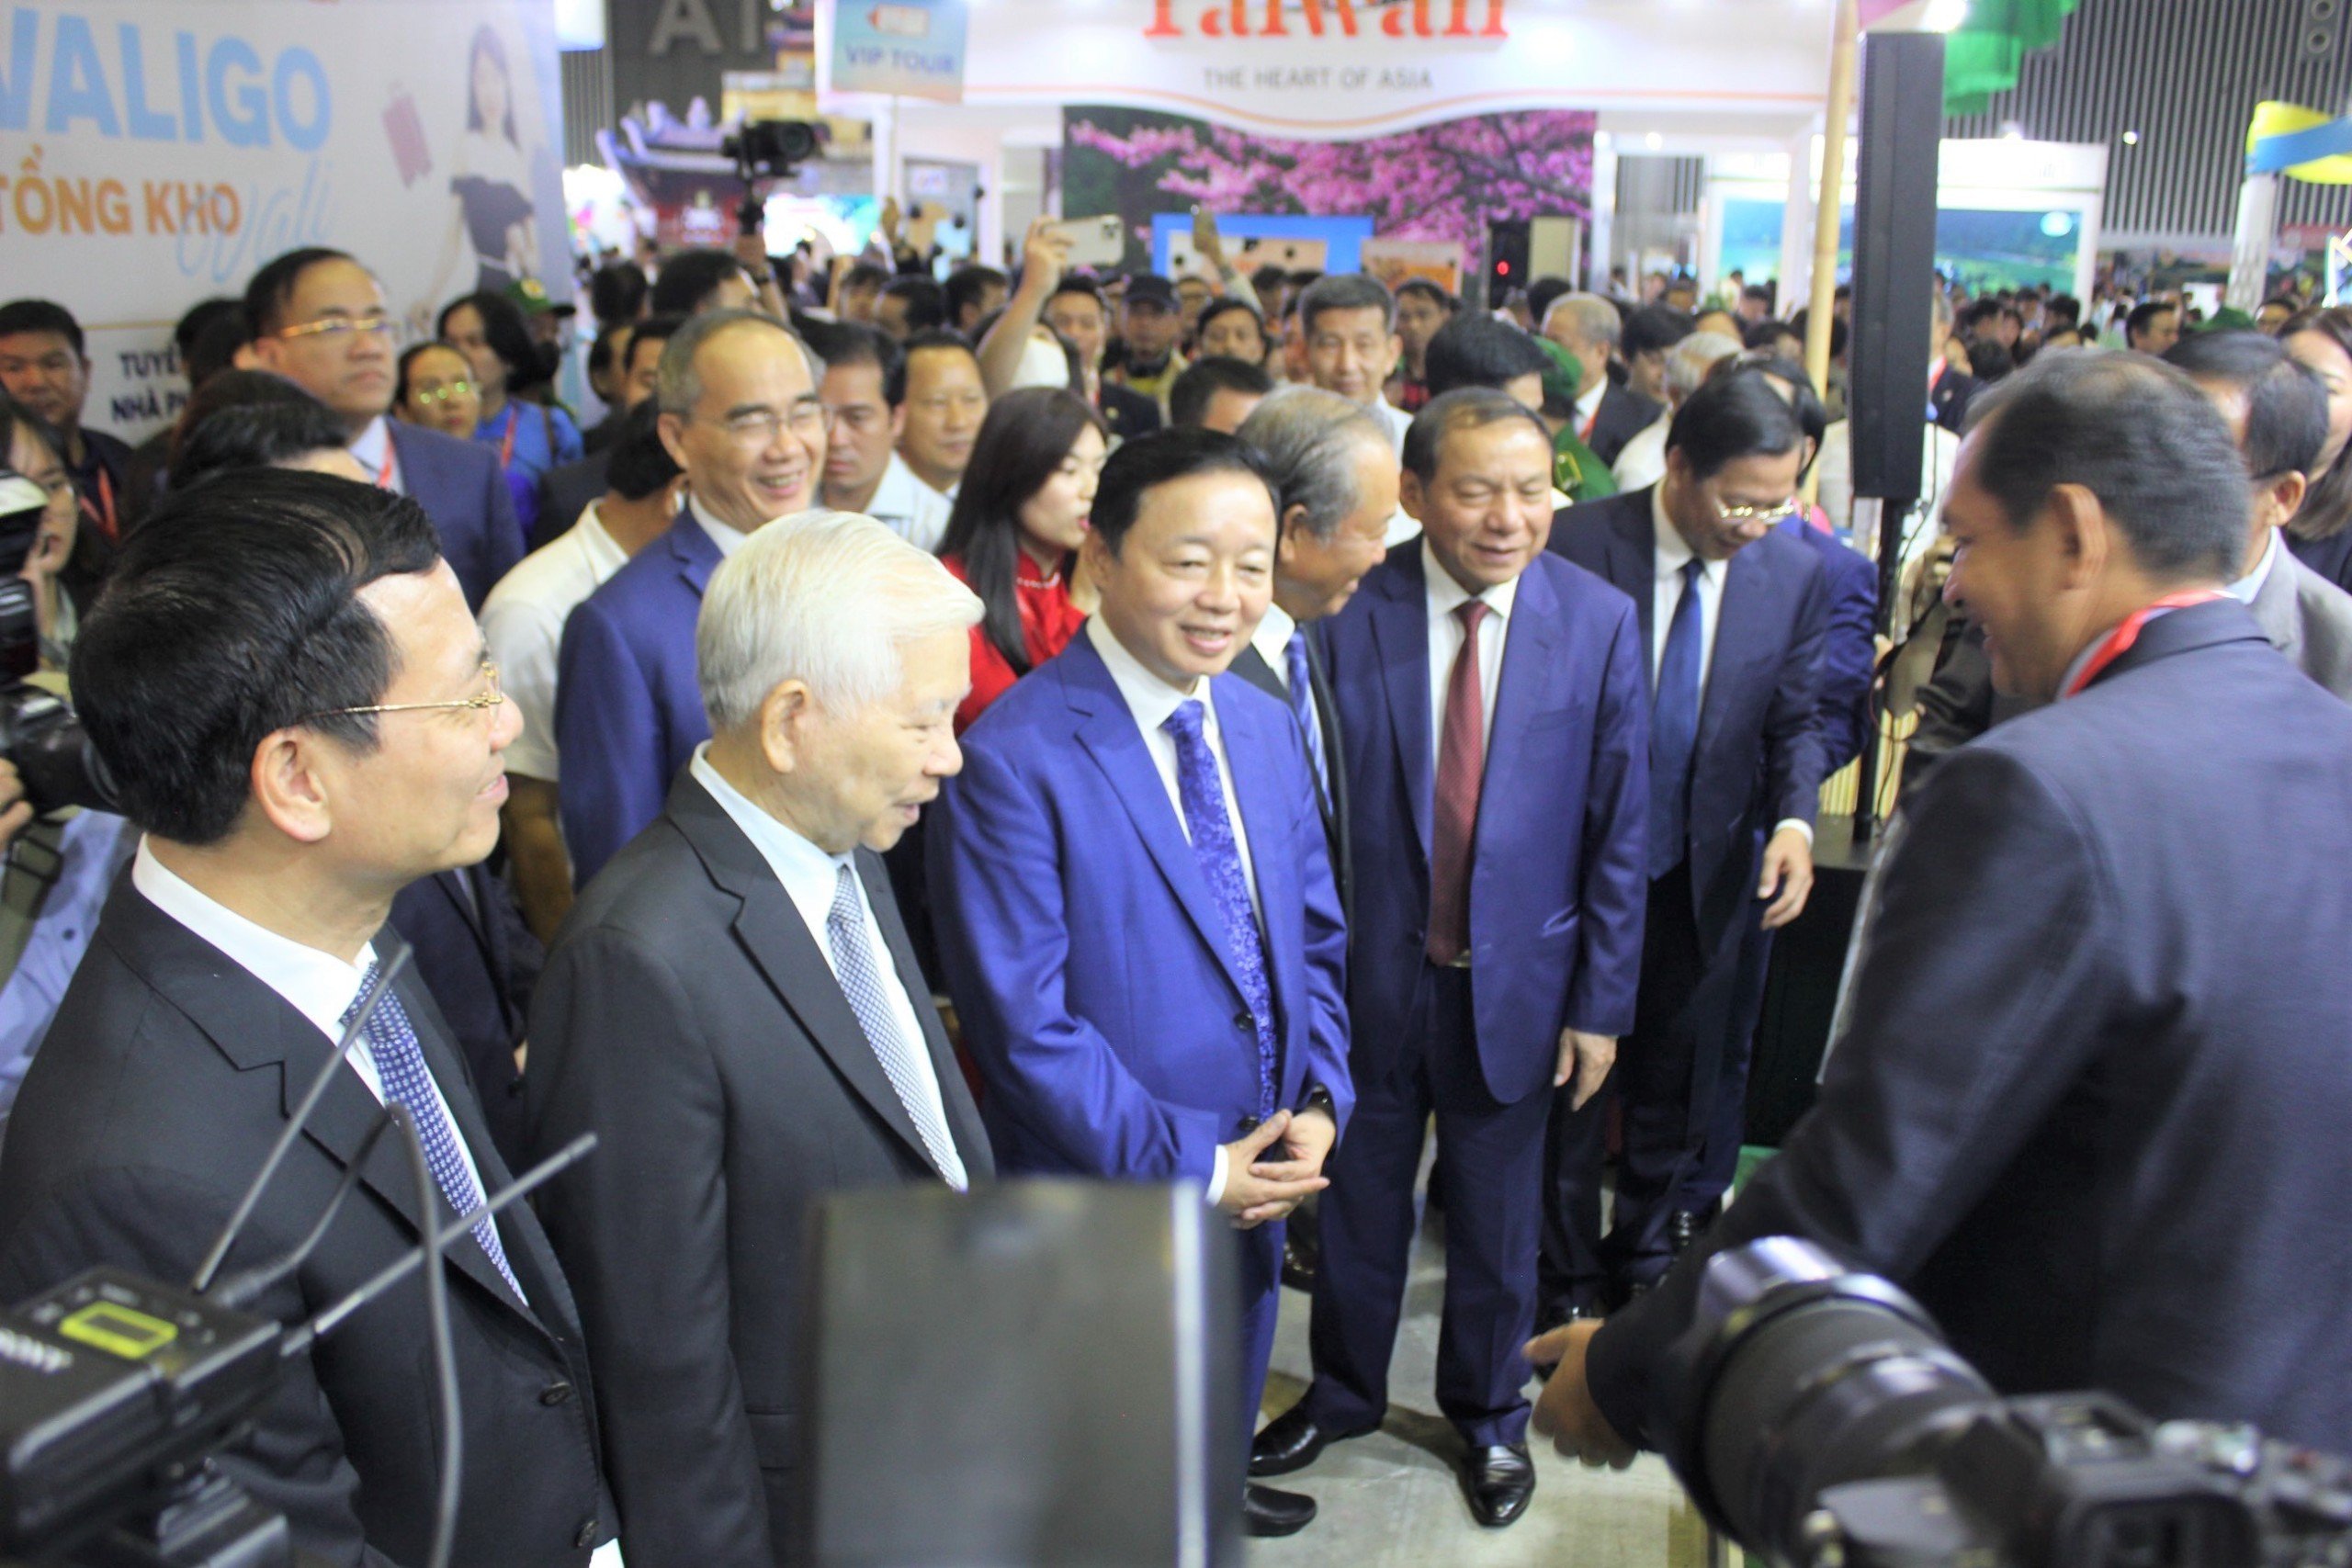 Chính thức khai mạc hội chợ Du lịch quốc tế lớn nhất Việt Nam lần thứ 17